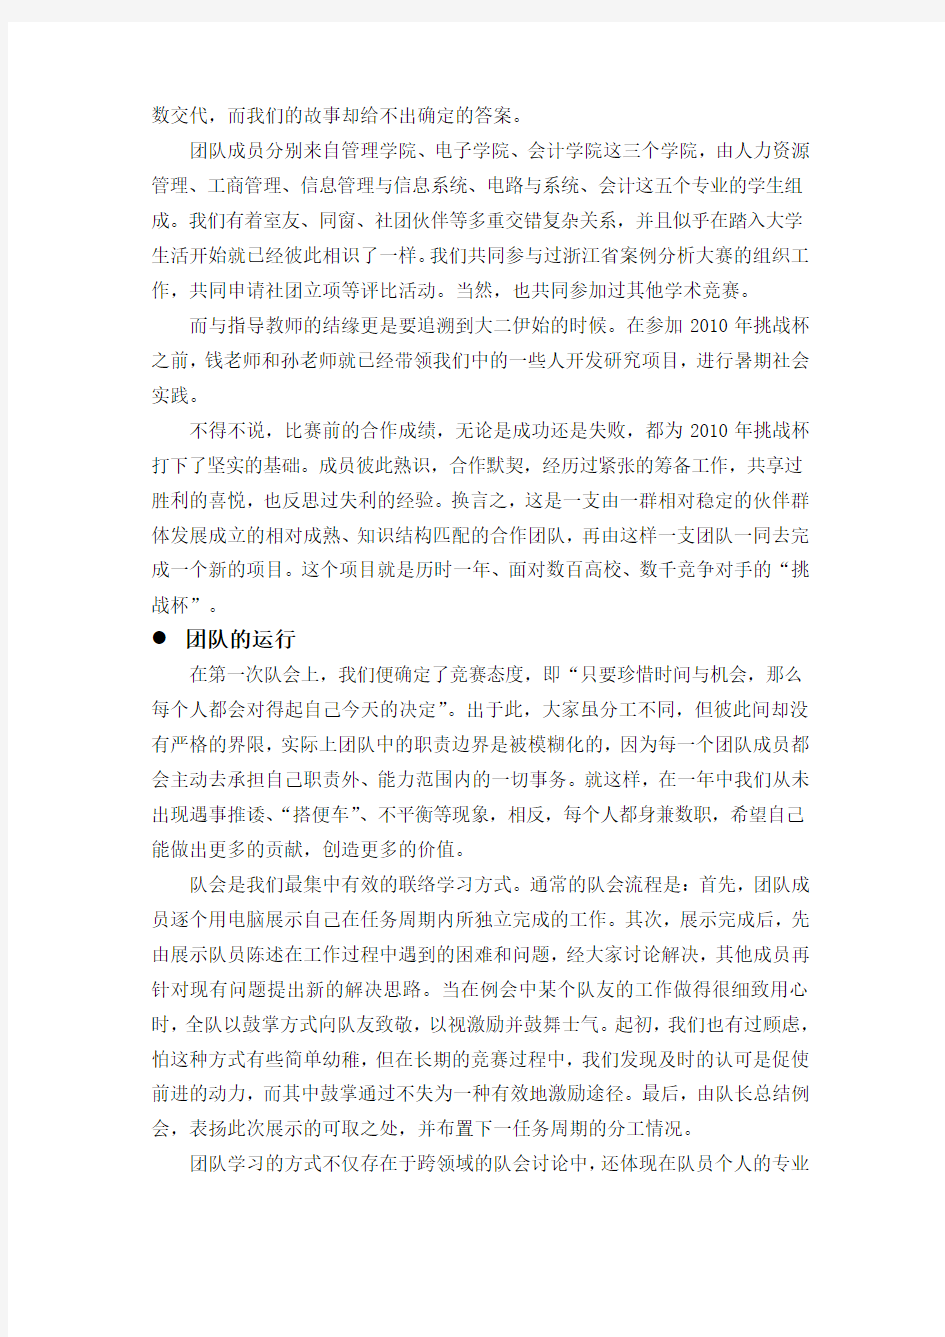 给学弟学妹的一封信 - 杭州电子科技大学团委